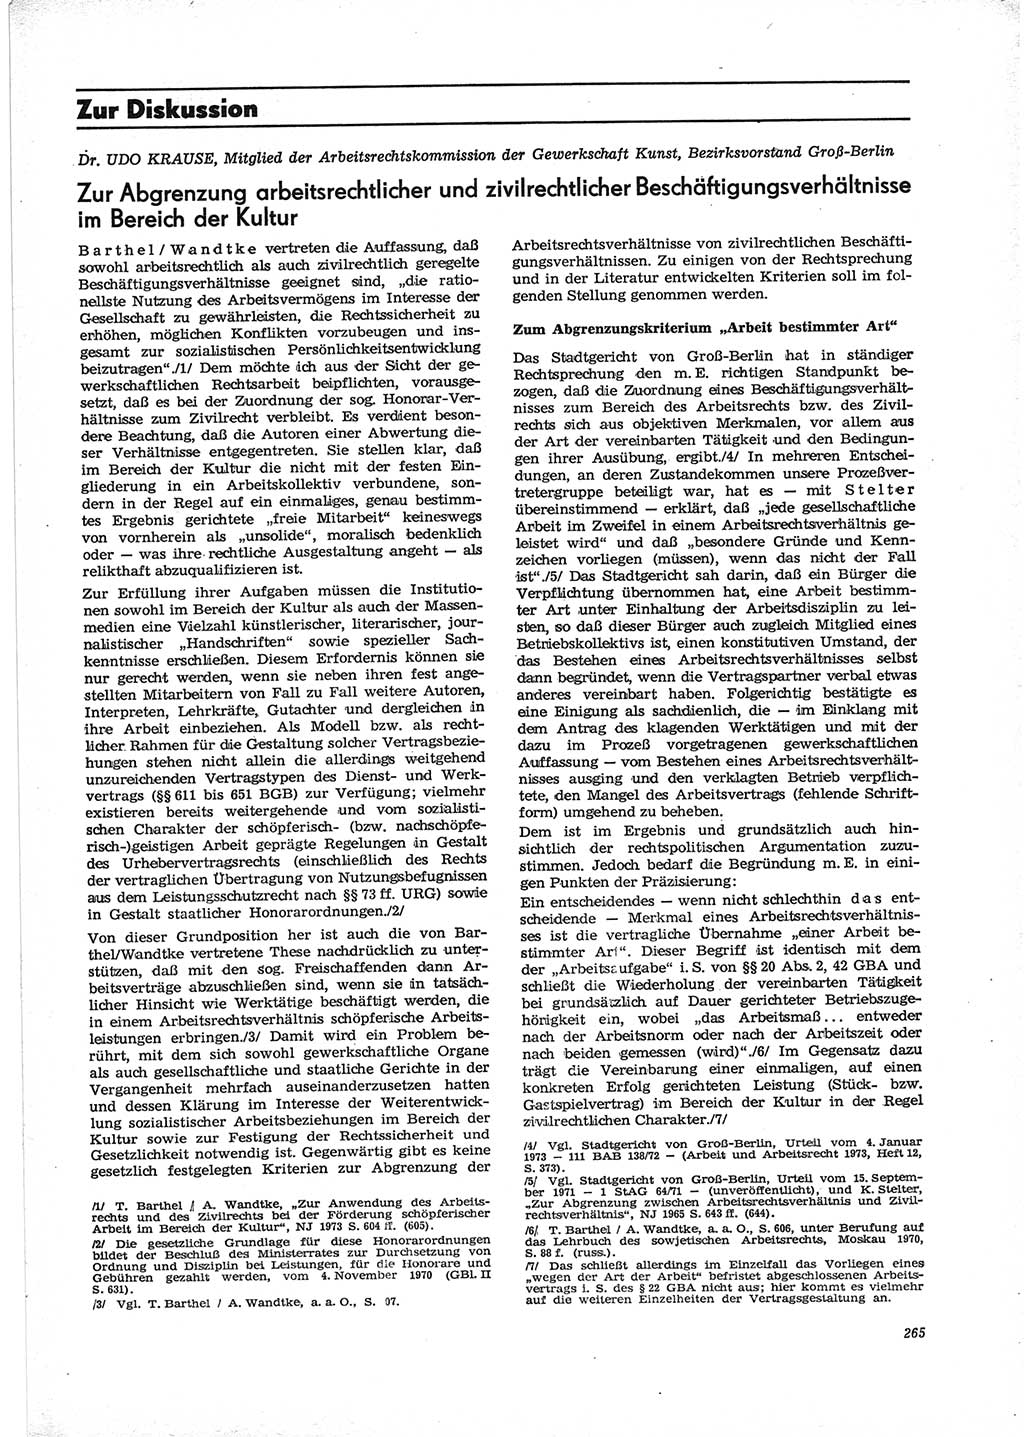 Neue Justiz (NJ), Zeitschrift für Recht und Rechtswissenschaft [Deutsche Demokratische Republik (DDR)], 28. Jahrgang 1974, Seite 265 (NJ DDR 1974, S. 265)